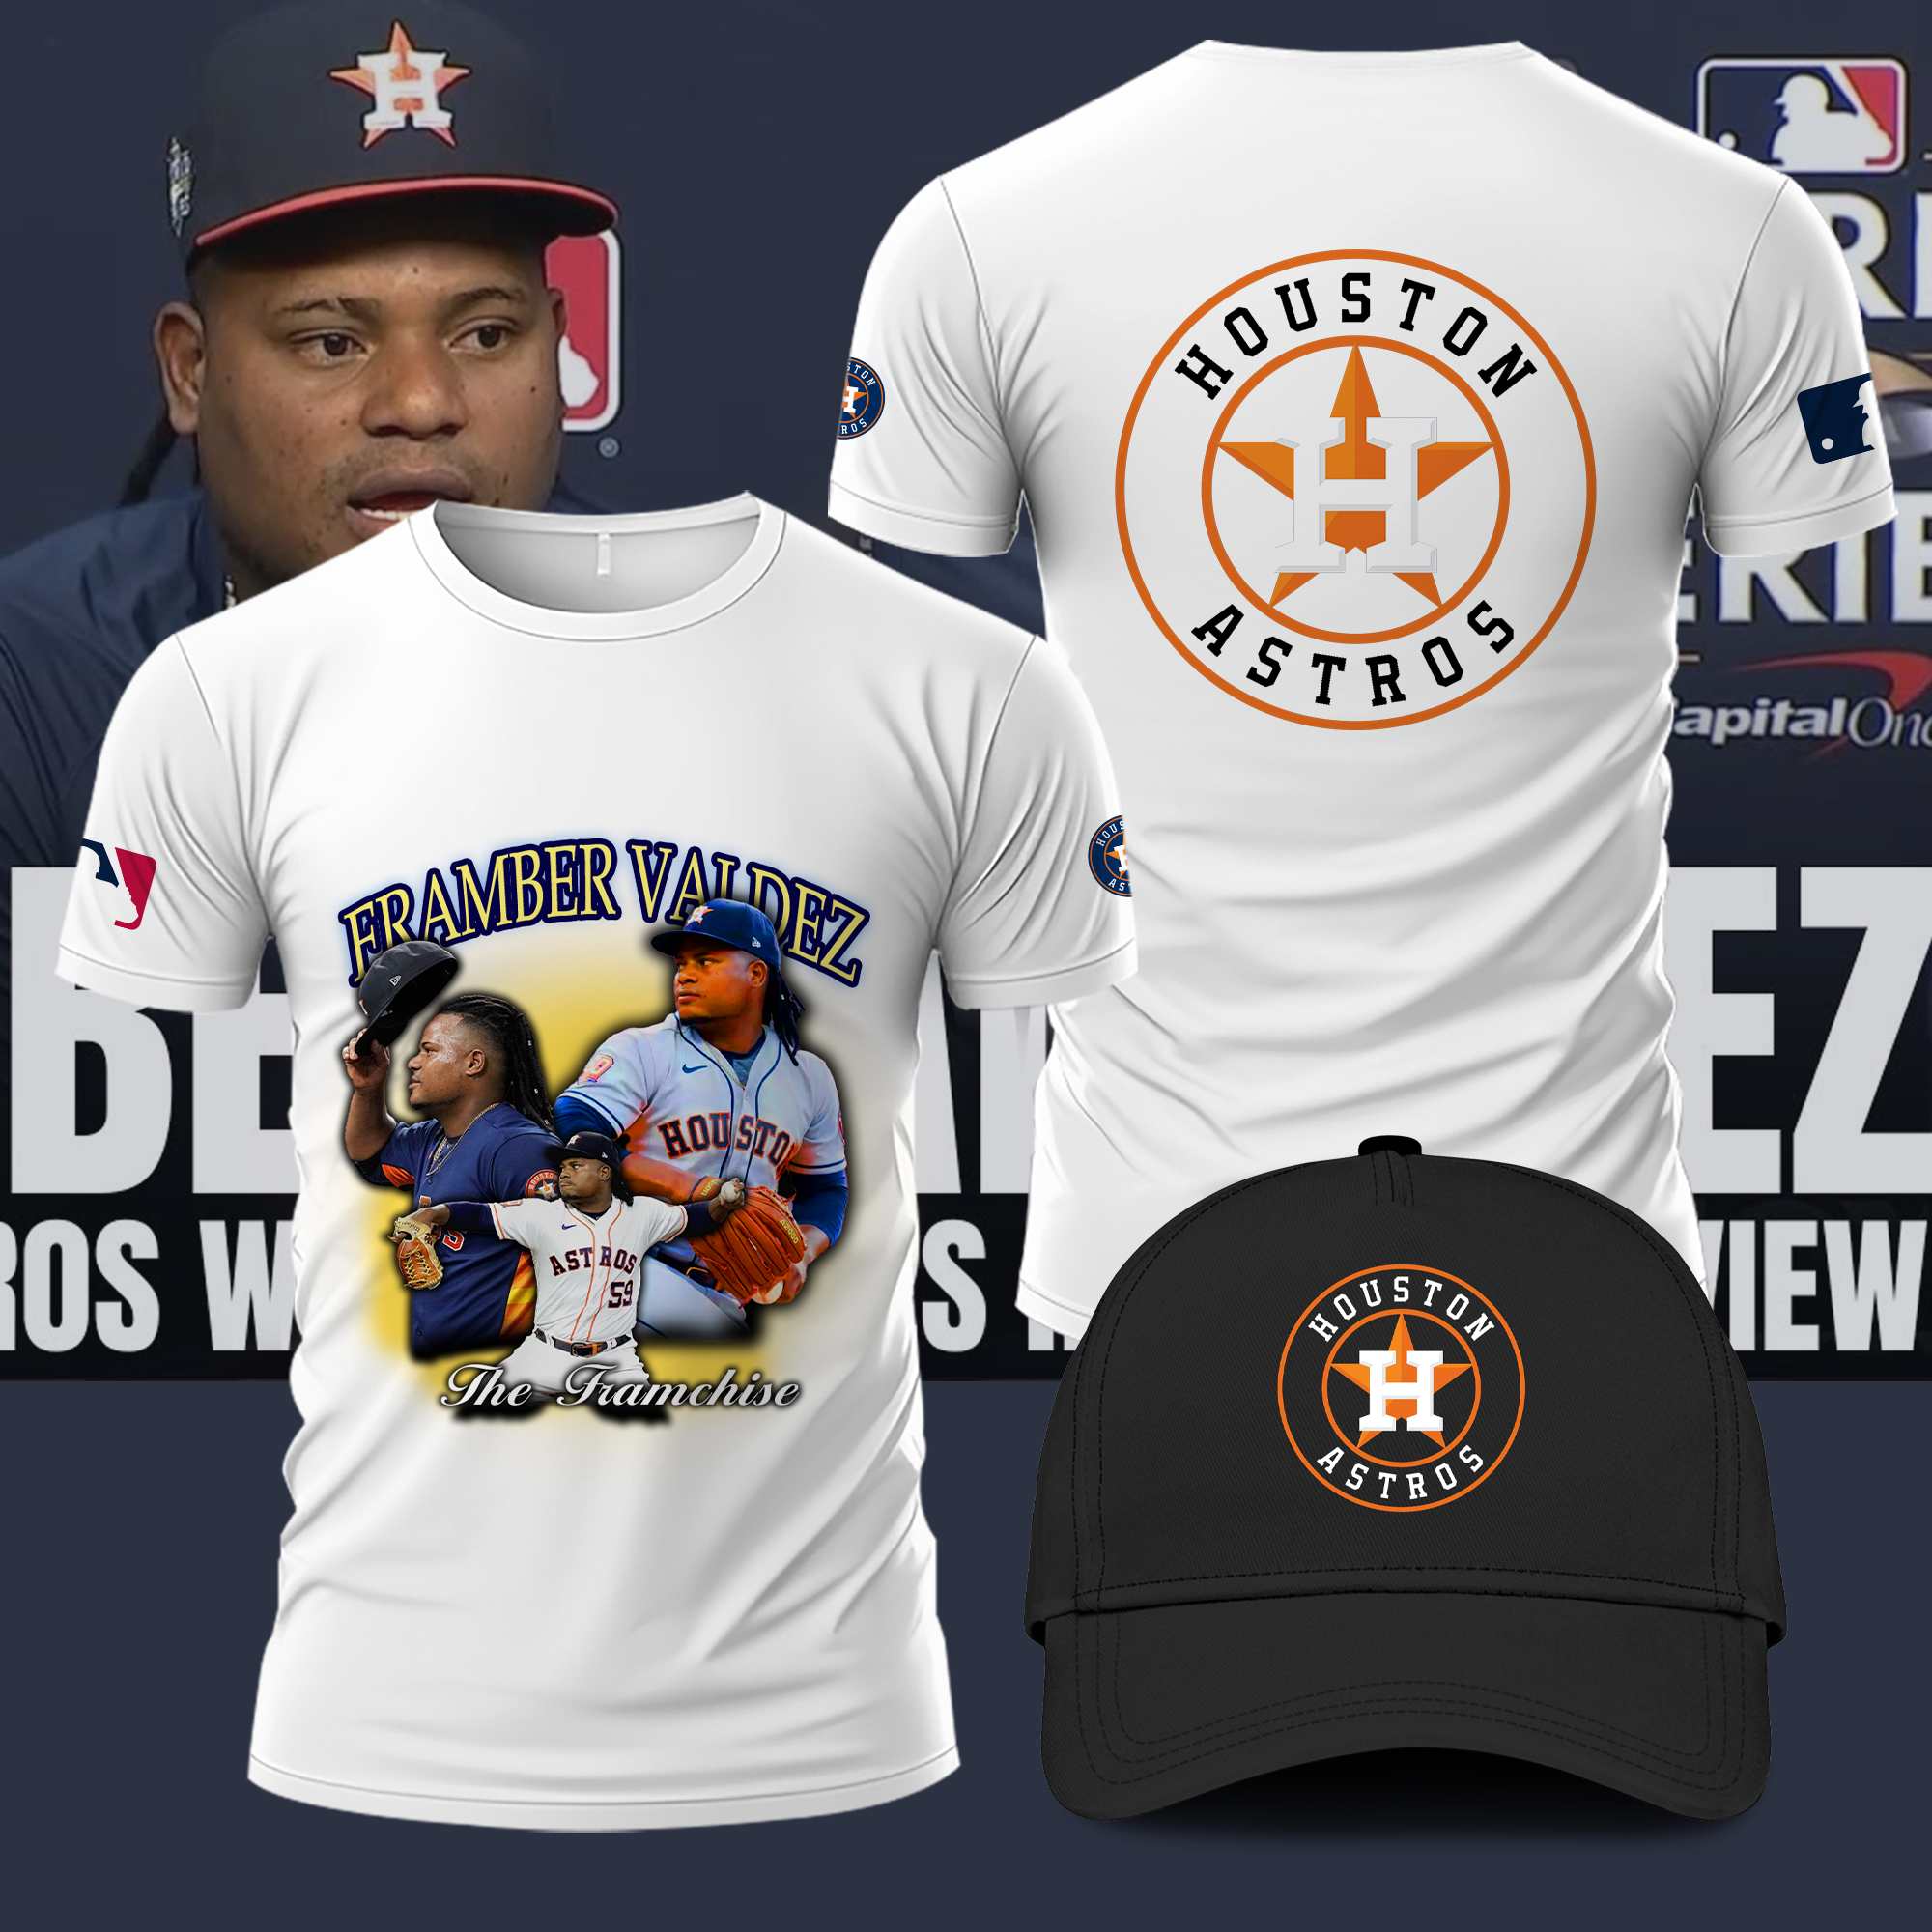 Framber Valdez 2022 Quality Start Tour Shirt Astros Baseball Merch